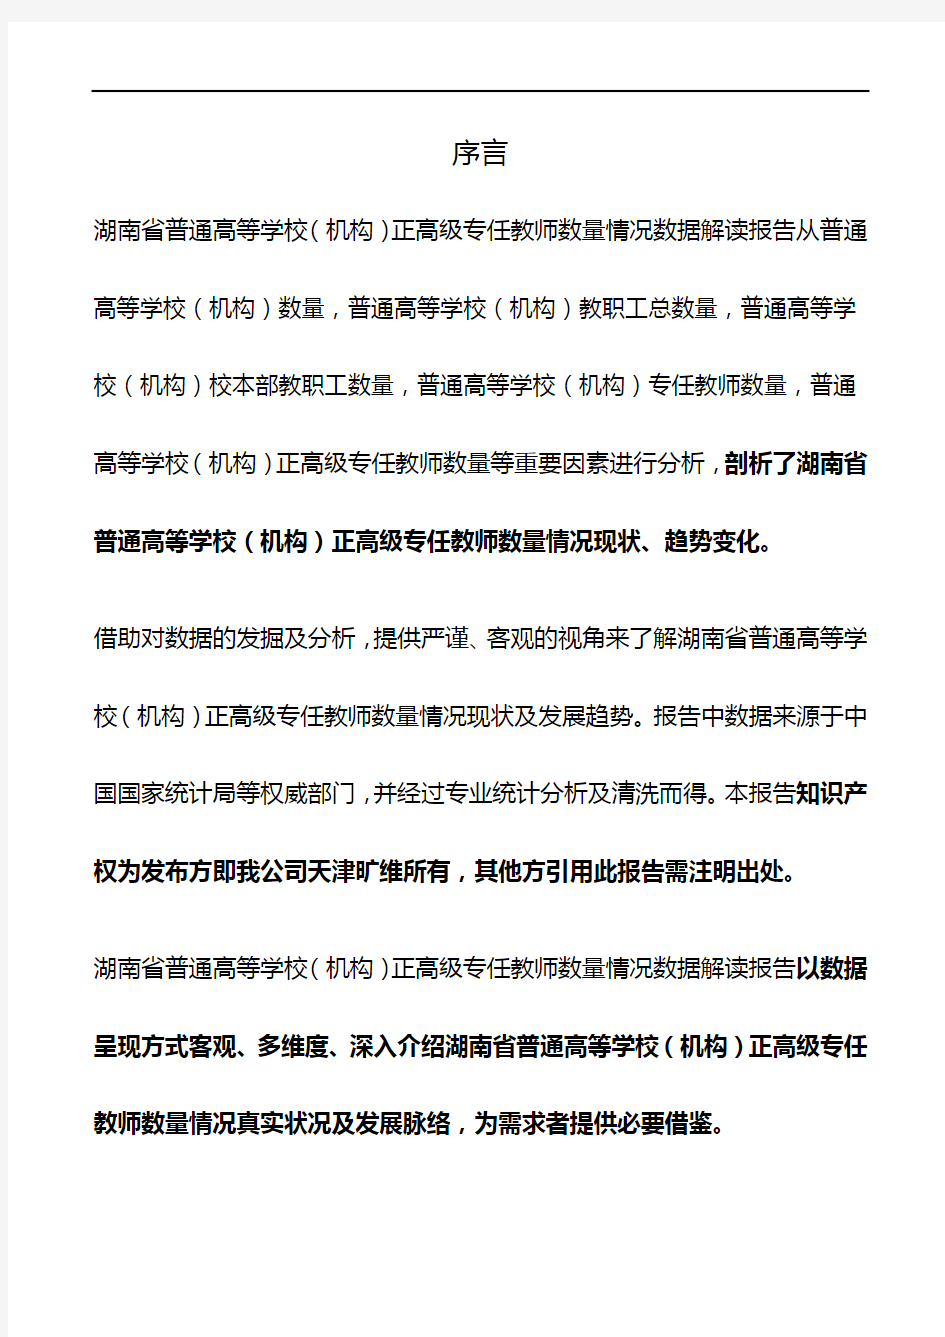 湖南省普通高等学校(机构)正高级专任教师数量情况3年数据解读报告2019版